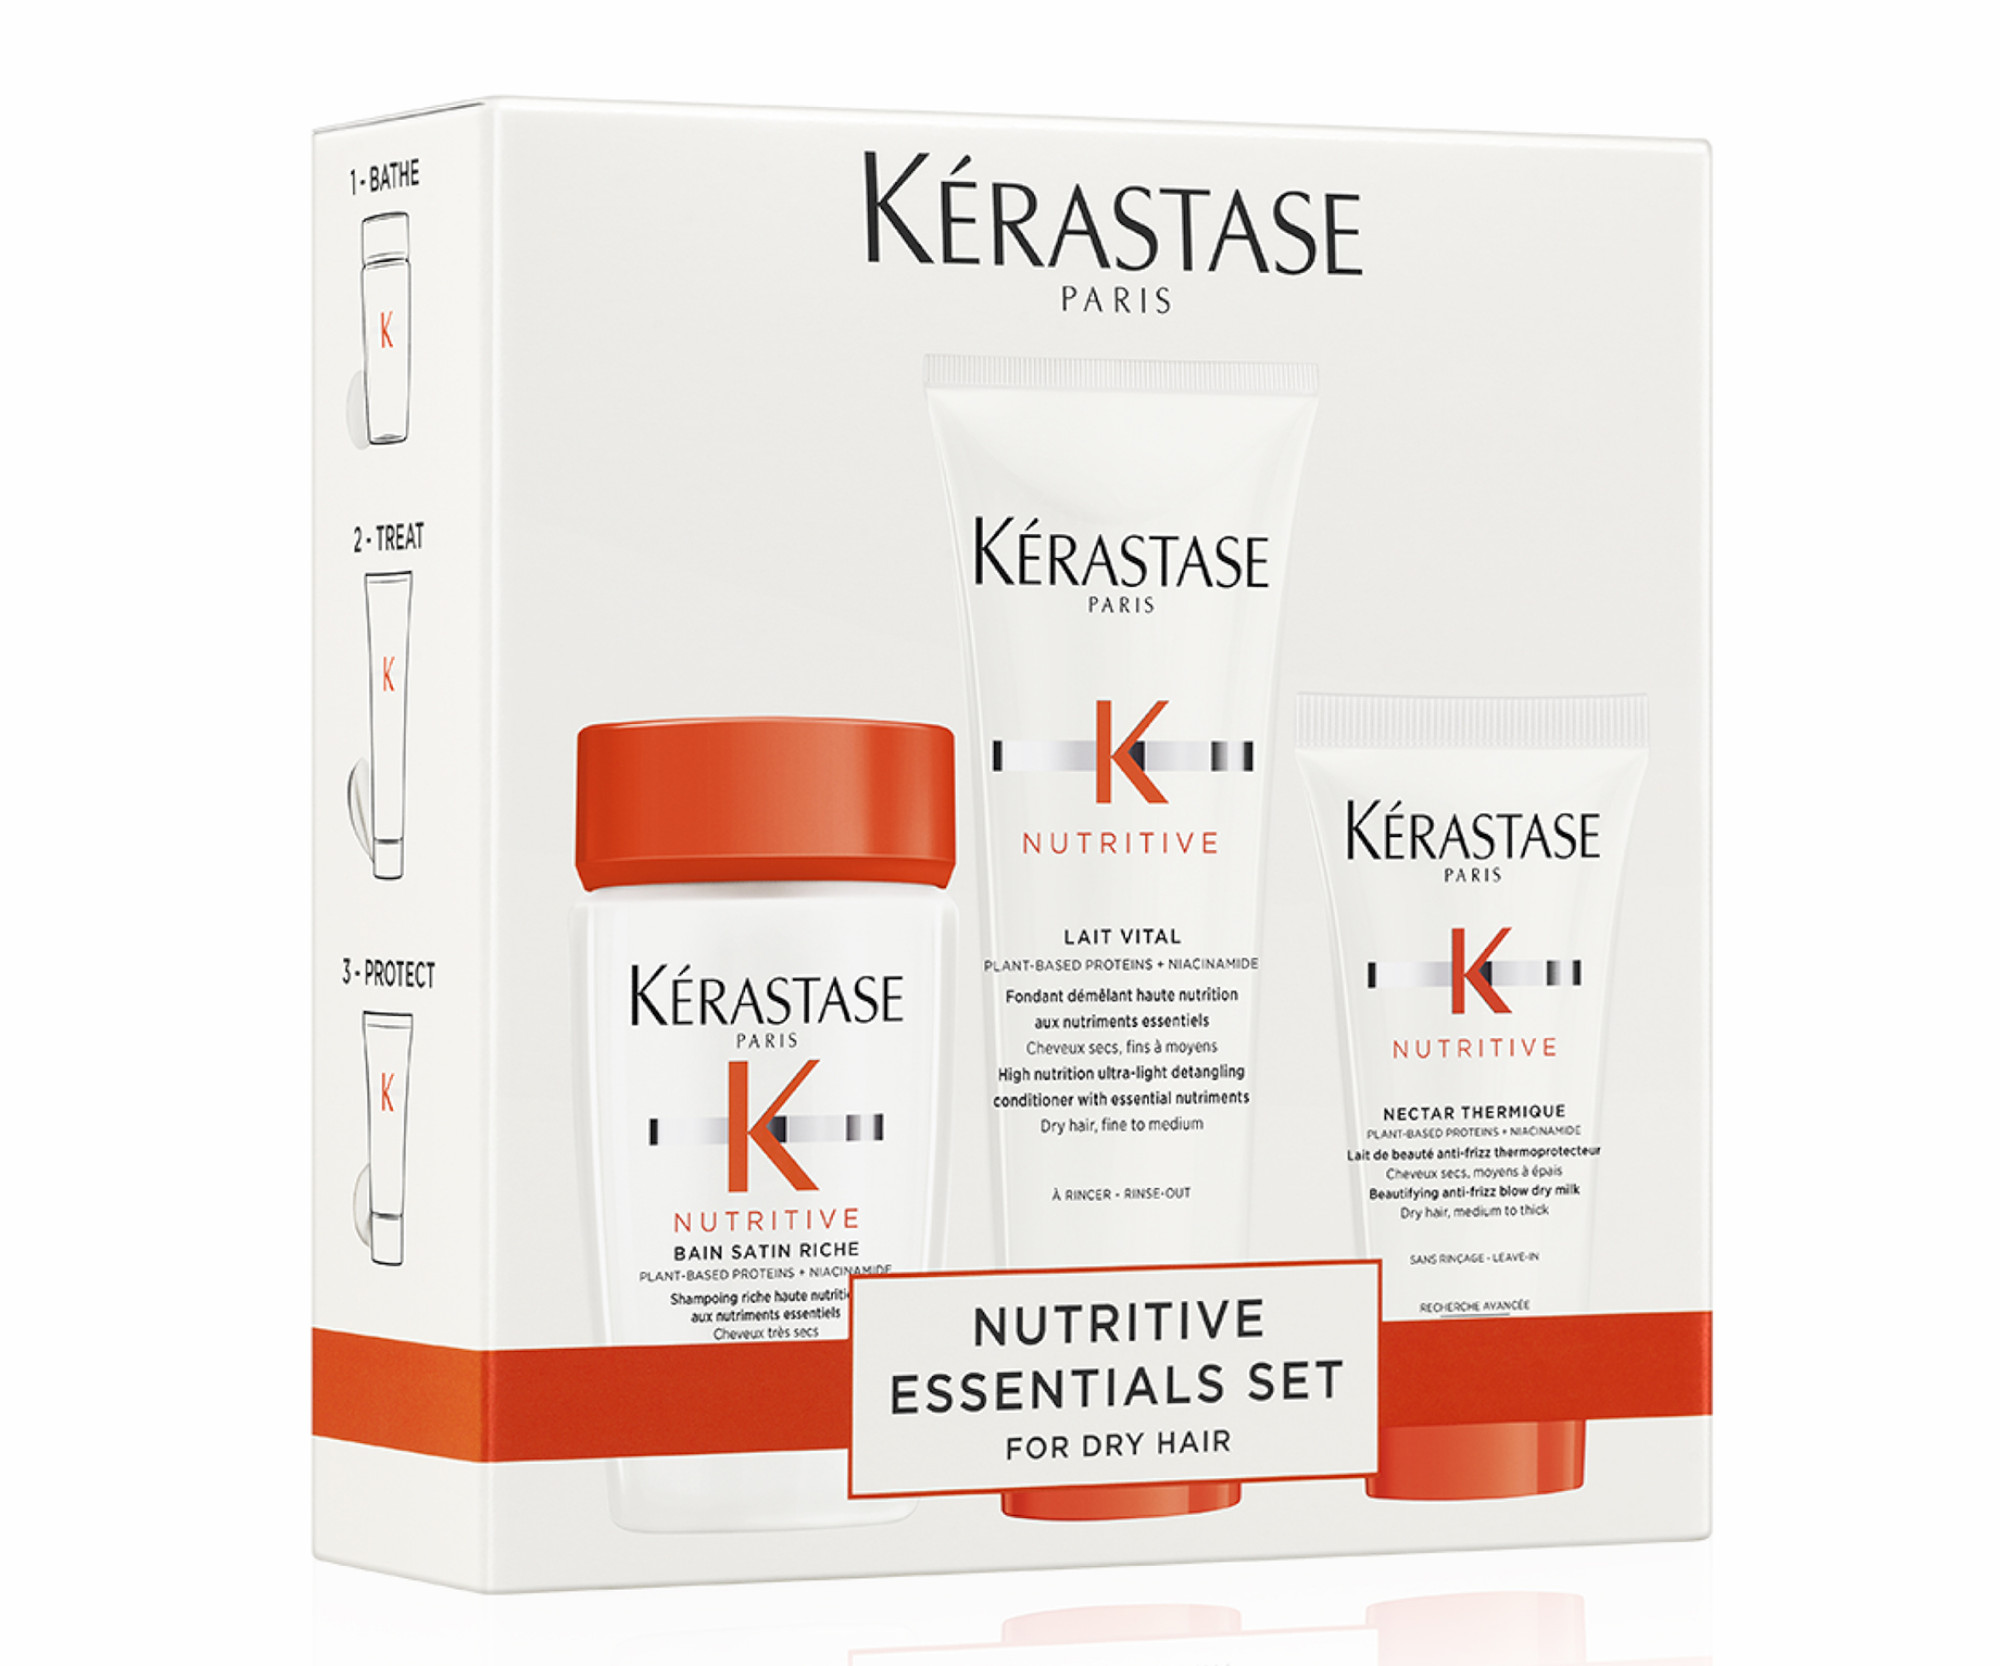 Dárková cestovní sada pro suché vlasy Kérastase Nutritive Essentials Set + dárek zdarma